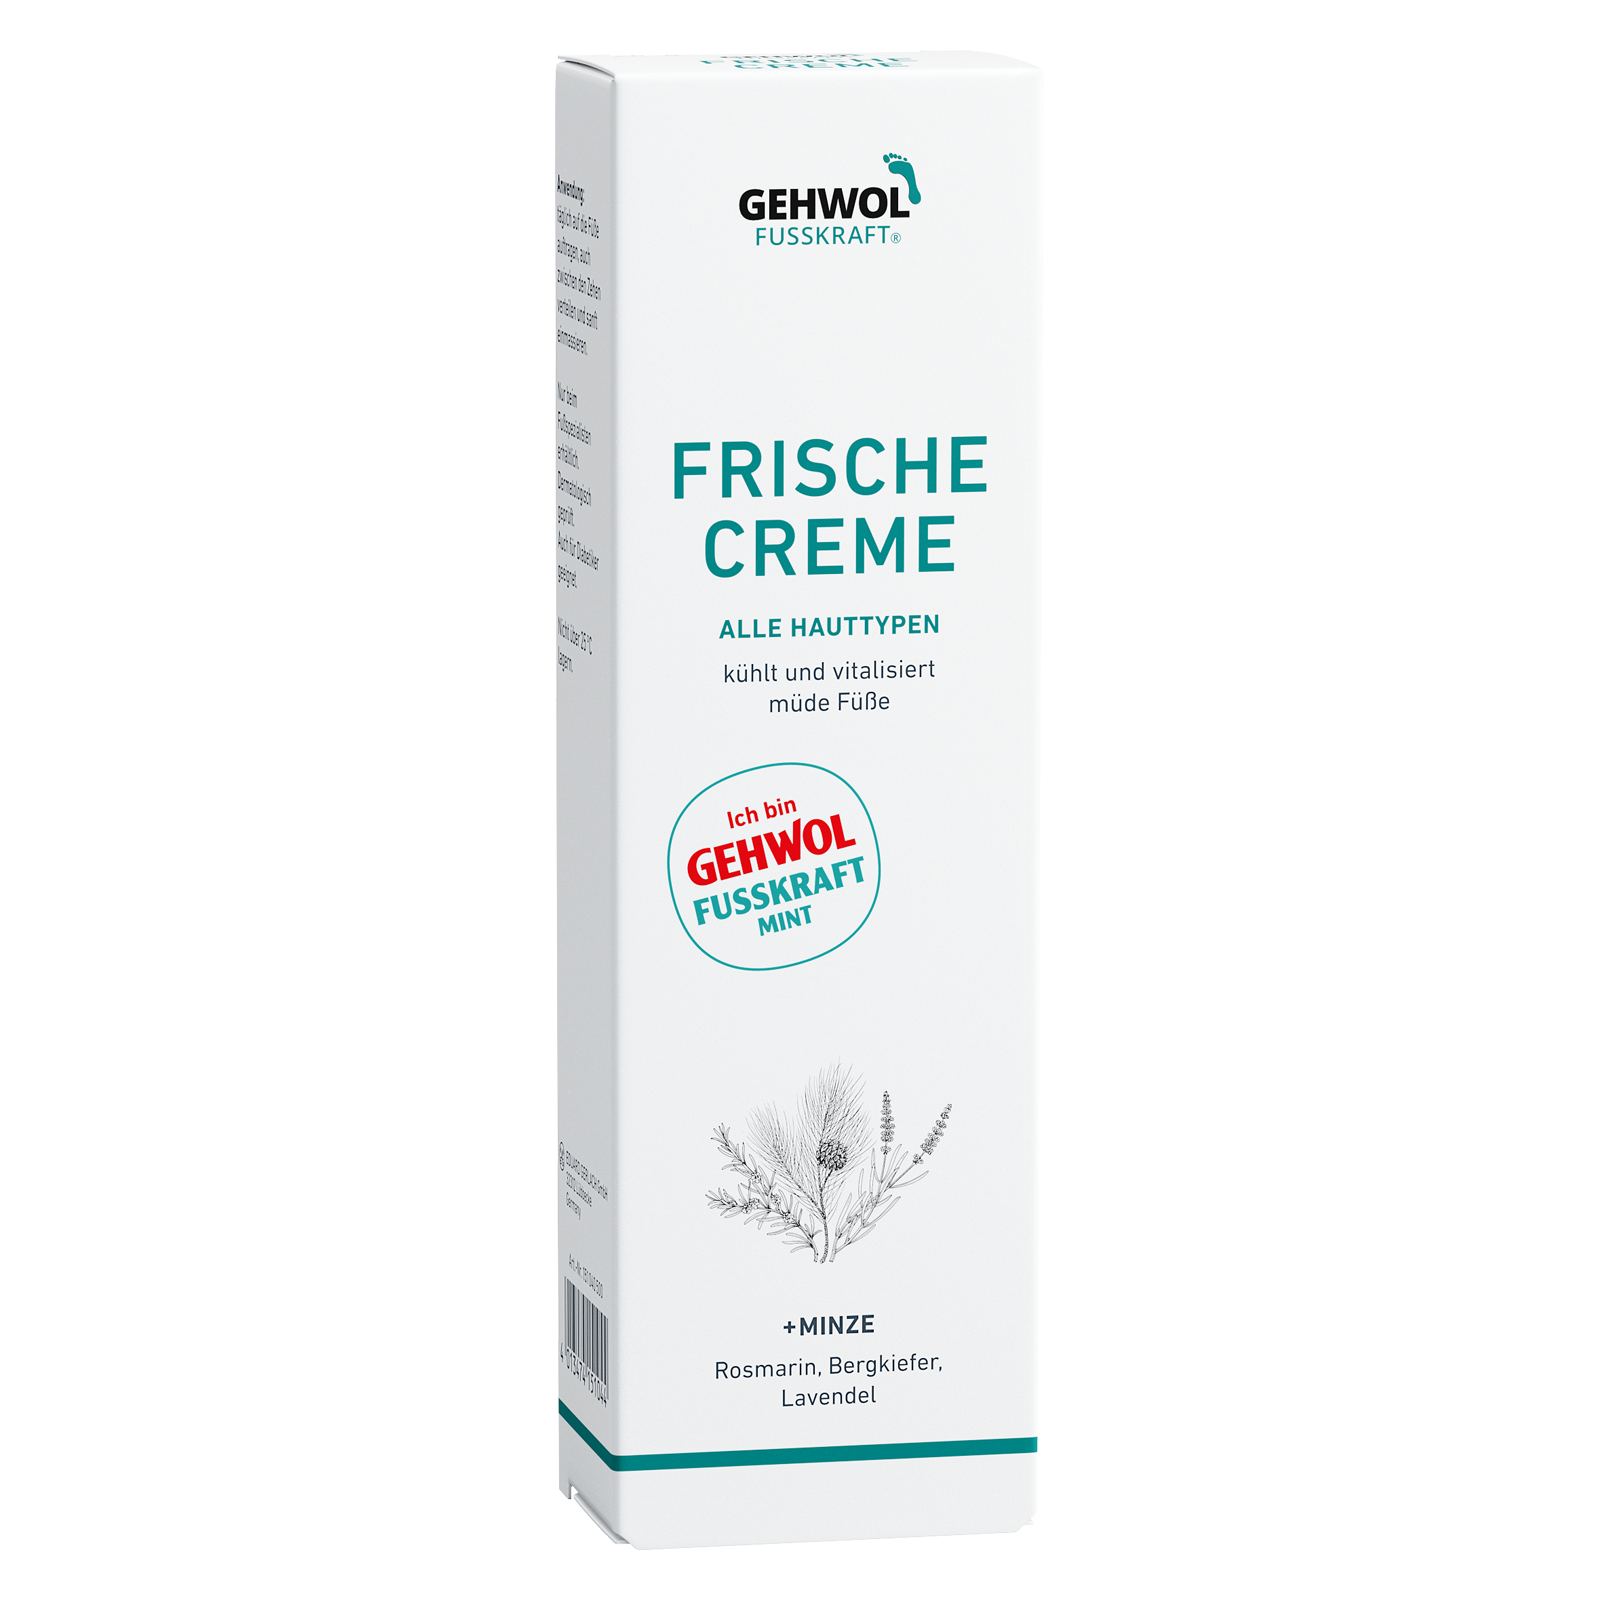 GEHWOL FUSSKRAFT® Frische Creme (Mint), 125 ml